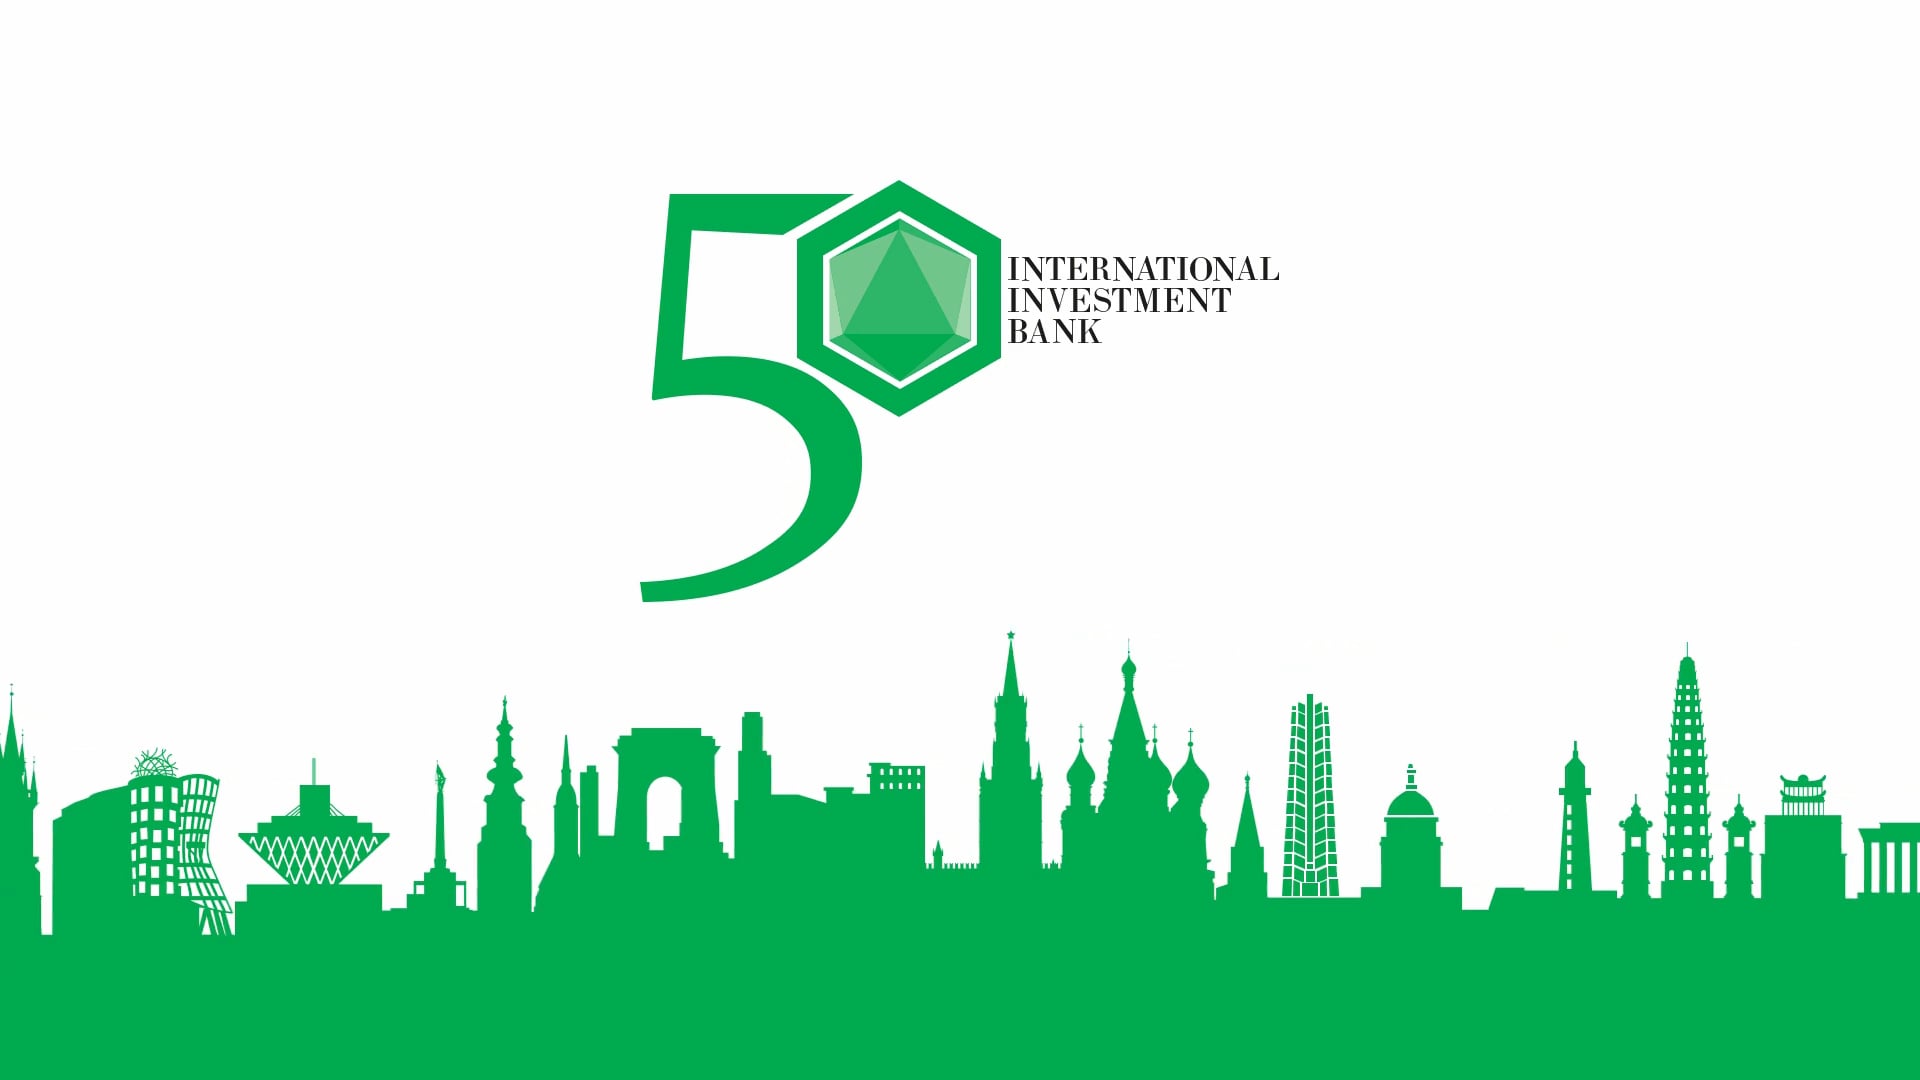 Банк международного сотрудничества. IIB банк. Международный инвестиционный банк. Международный инвестиционный банк лого. Международный банк экономического сотрудничества логотип.